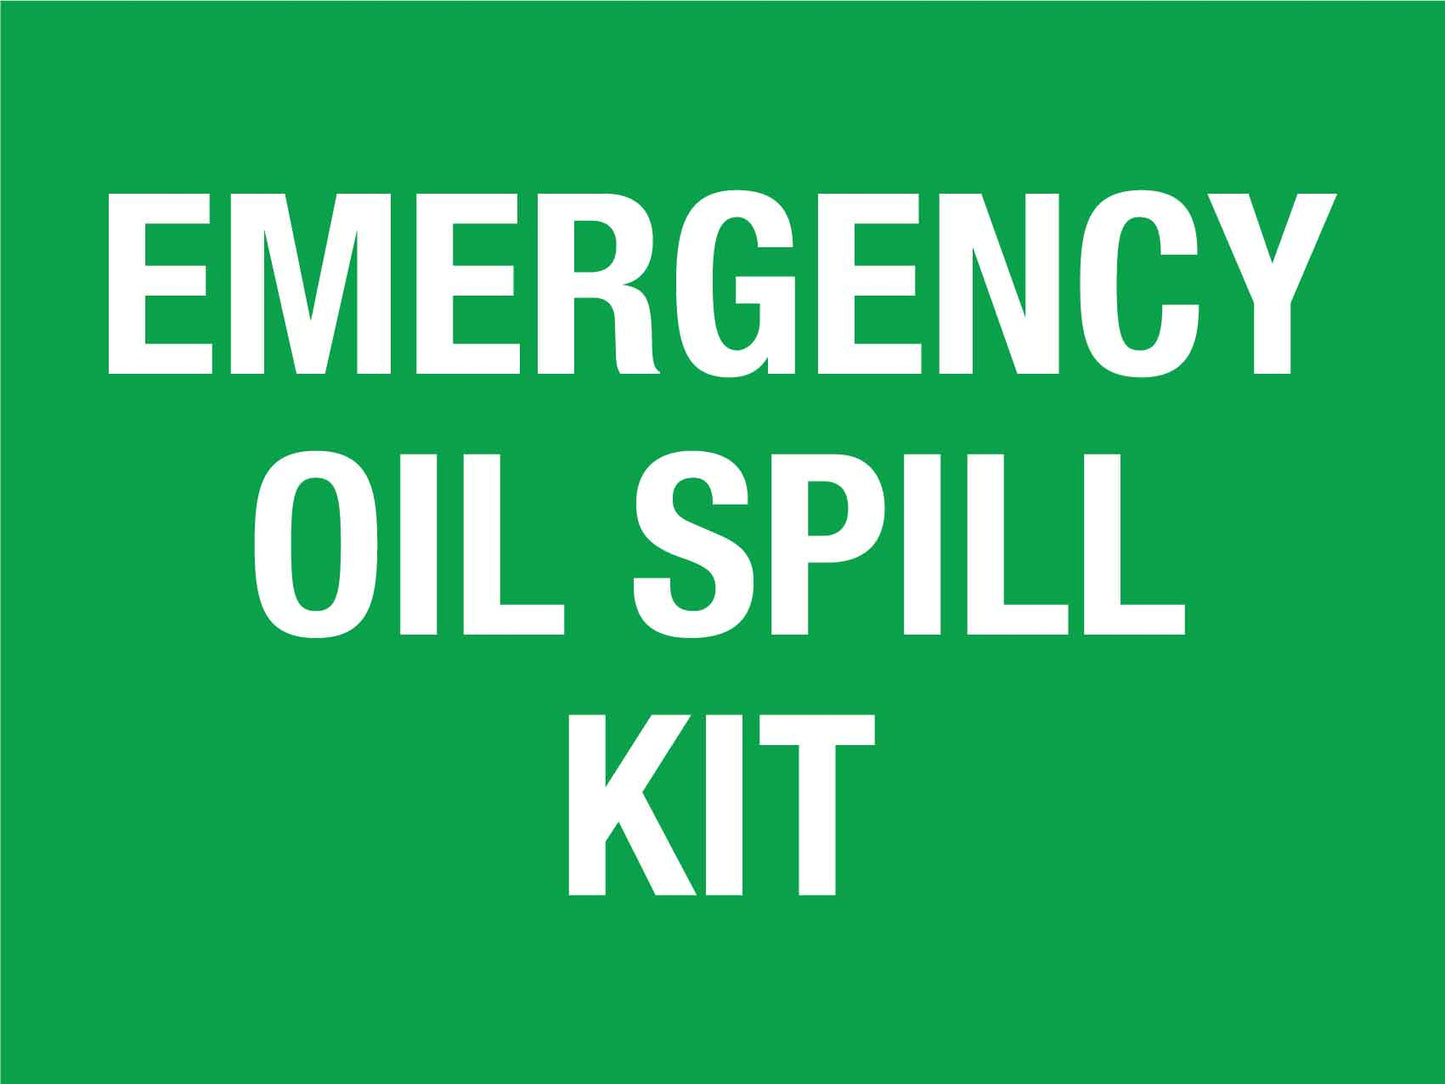 Emergency Oil Spill Kit Sign